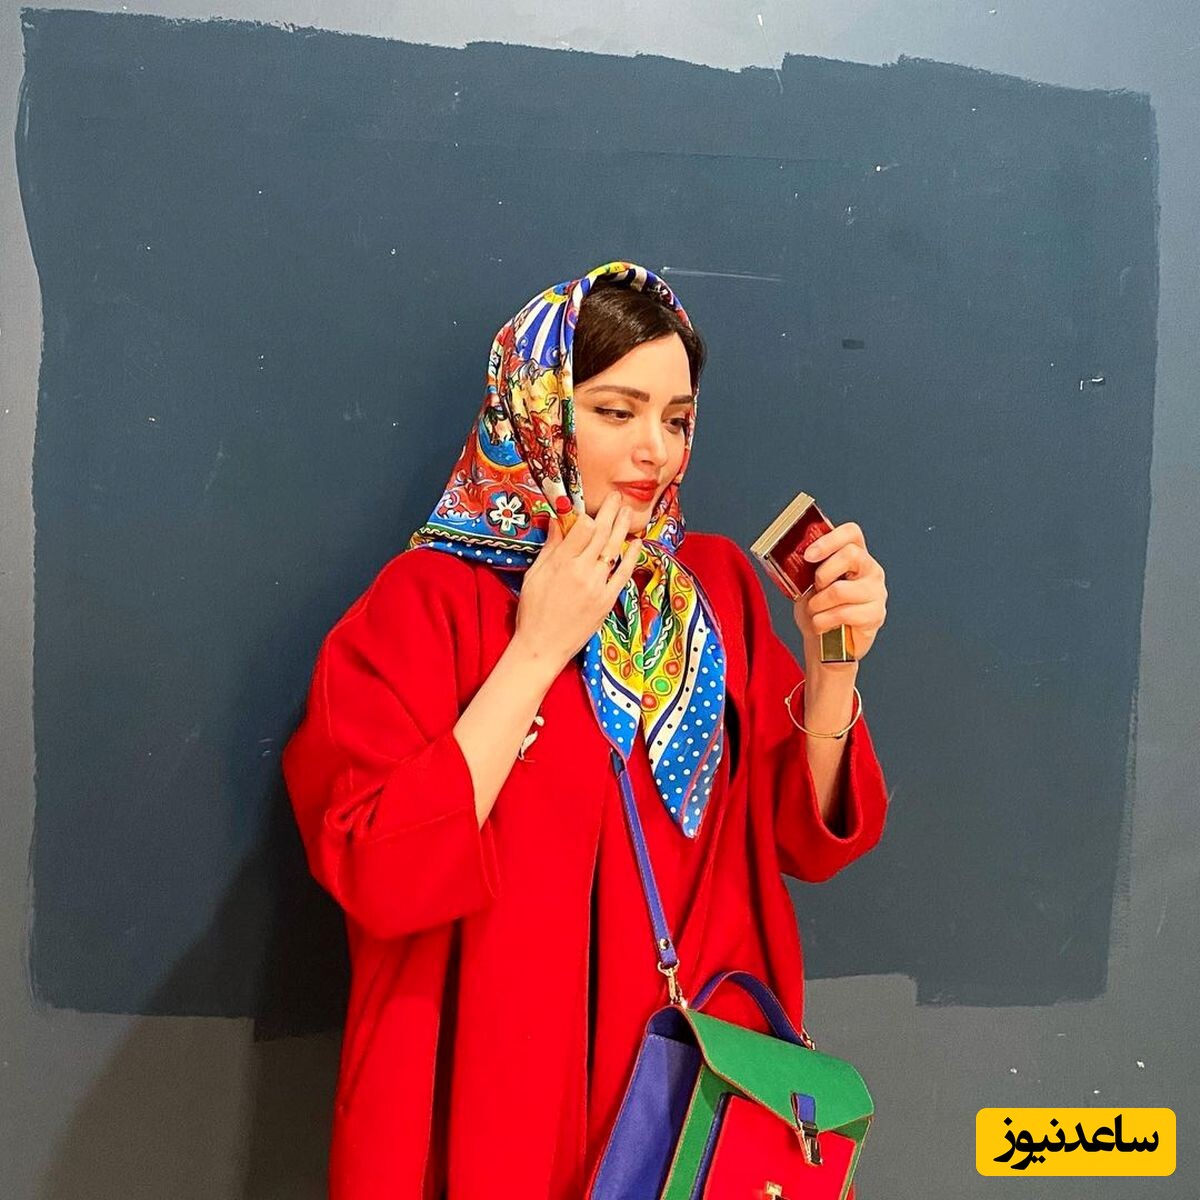 رونمایی بهنوش طباطبایی همسر اول مهدی پاکدل از مراسم افتتاحیه مطب پزشکی‌اش در تهران بدون تزئینات آنچنانی و ریخت و پاش+عکس/ مبارکه خانوم دکتر